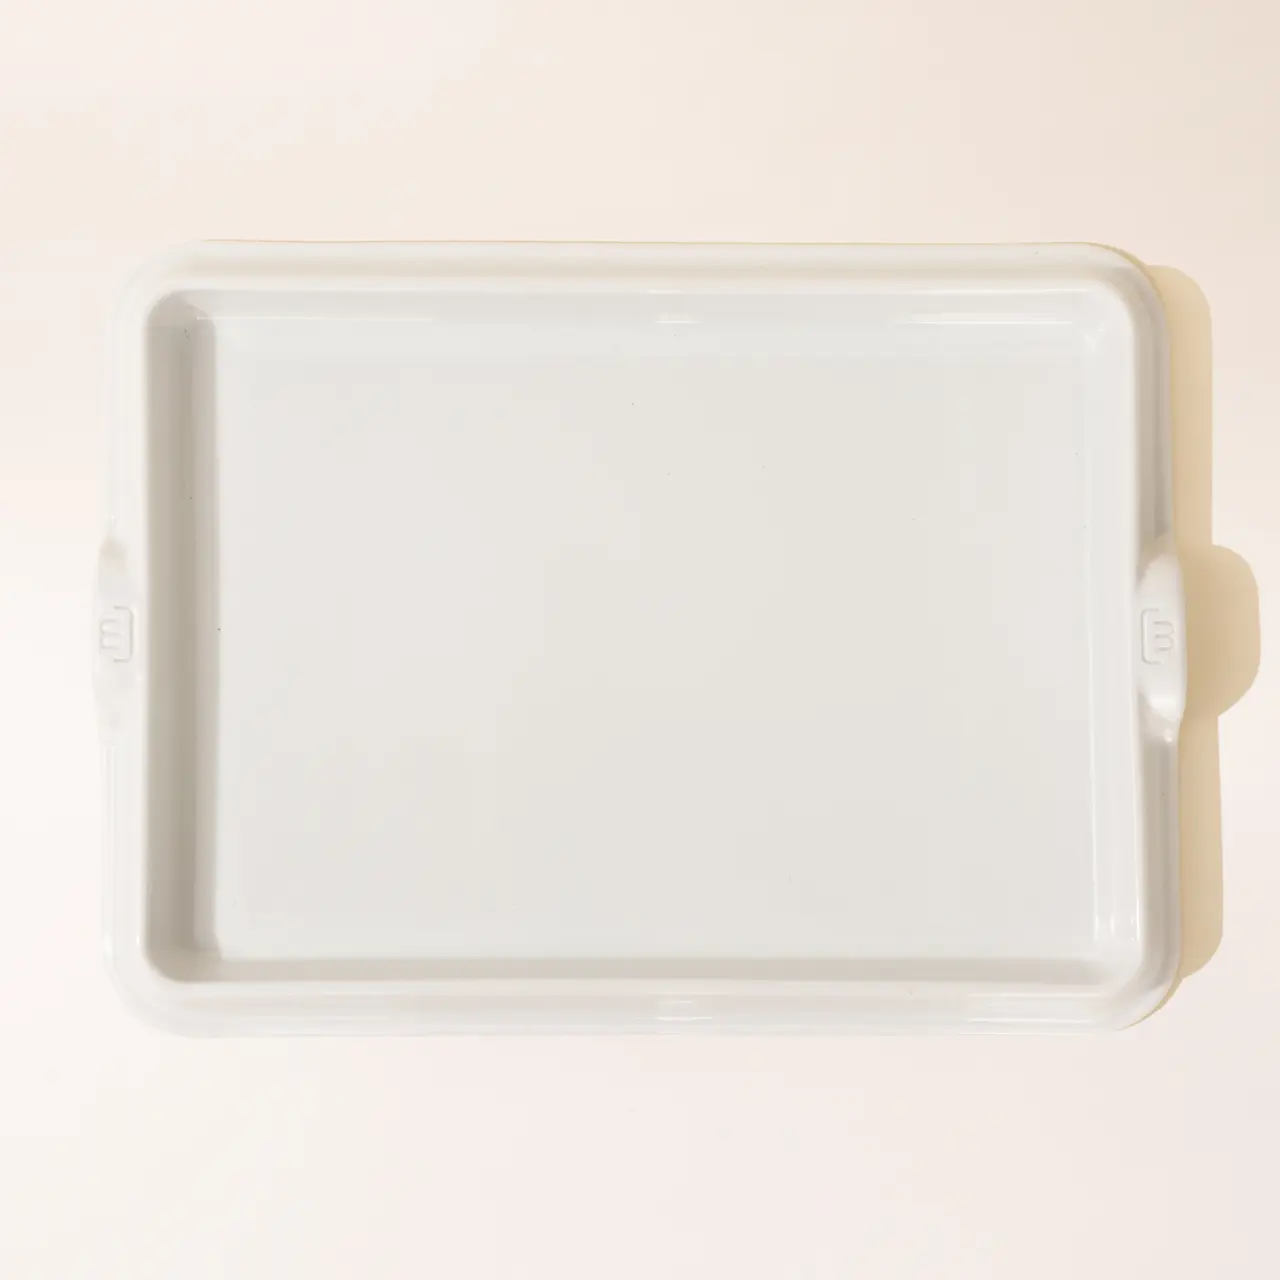 White porcelain baking slab